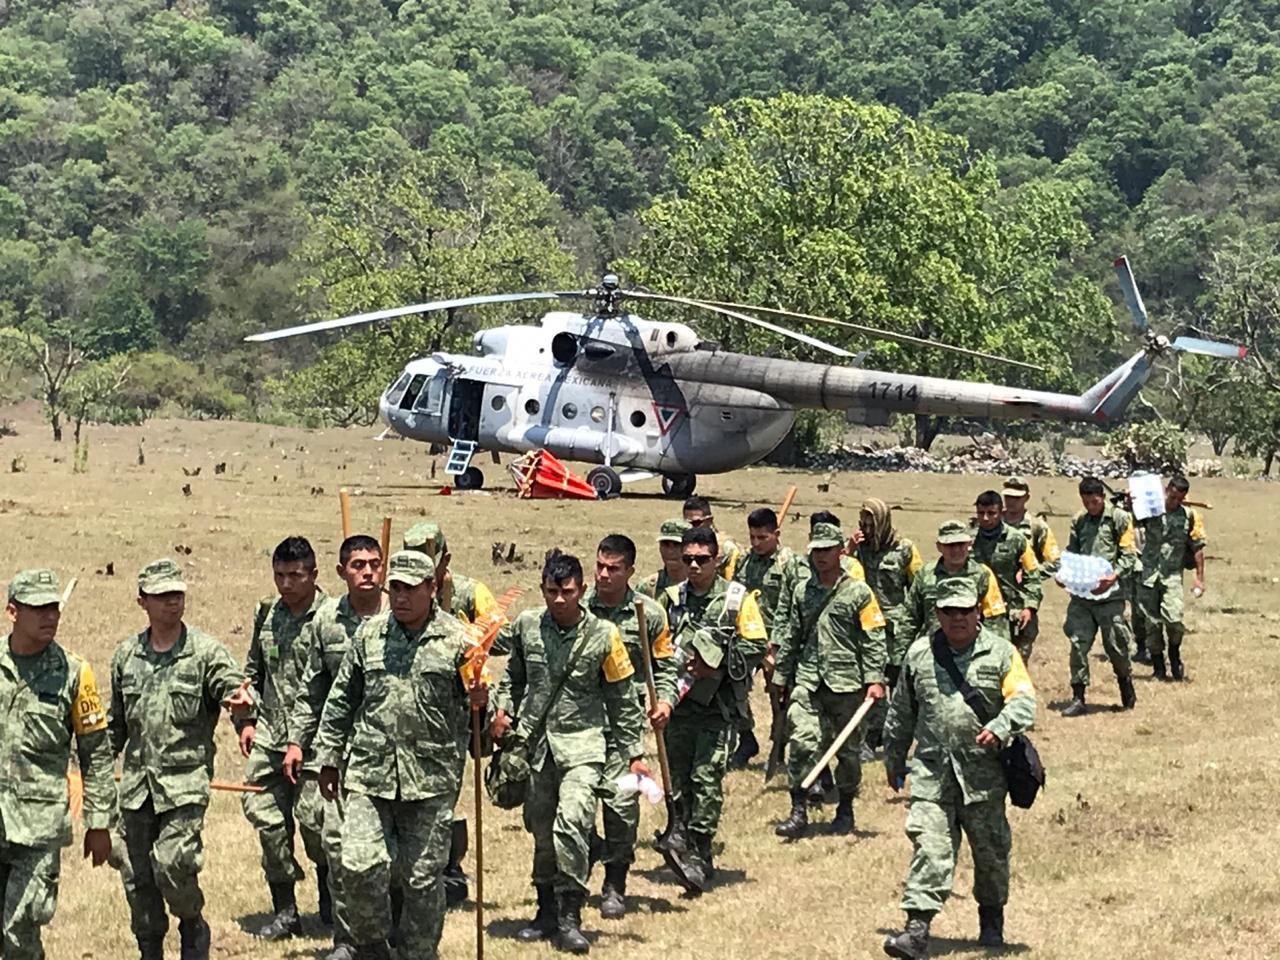  Marinos localizan por tierra restos del helicóptero colapsado en Valle Verde